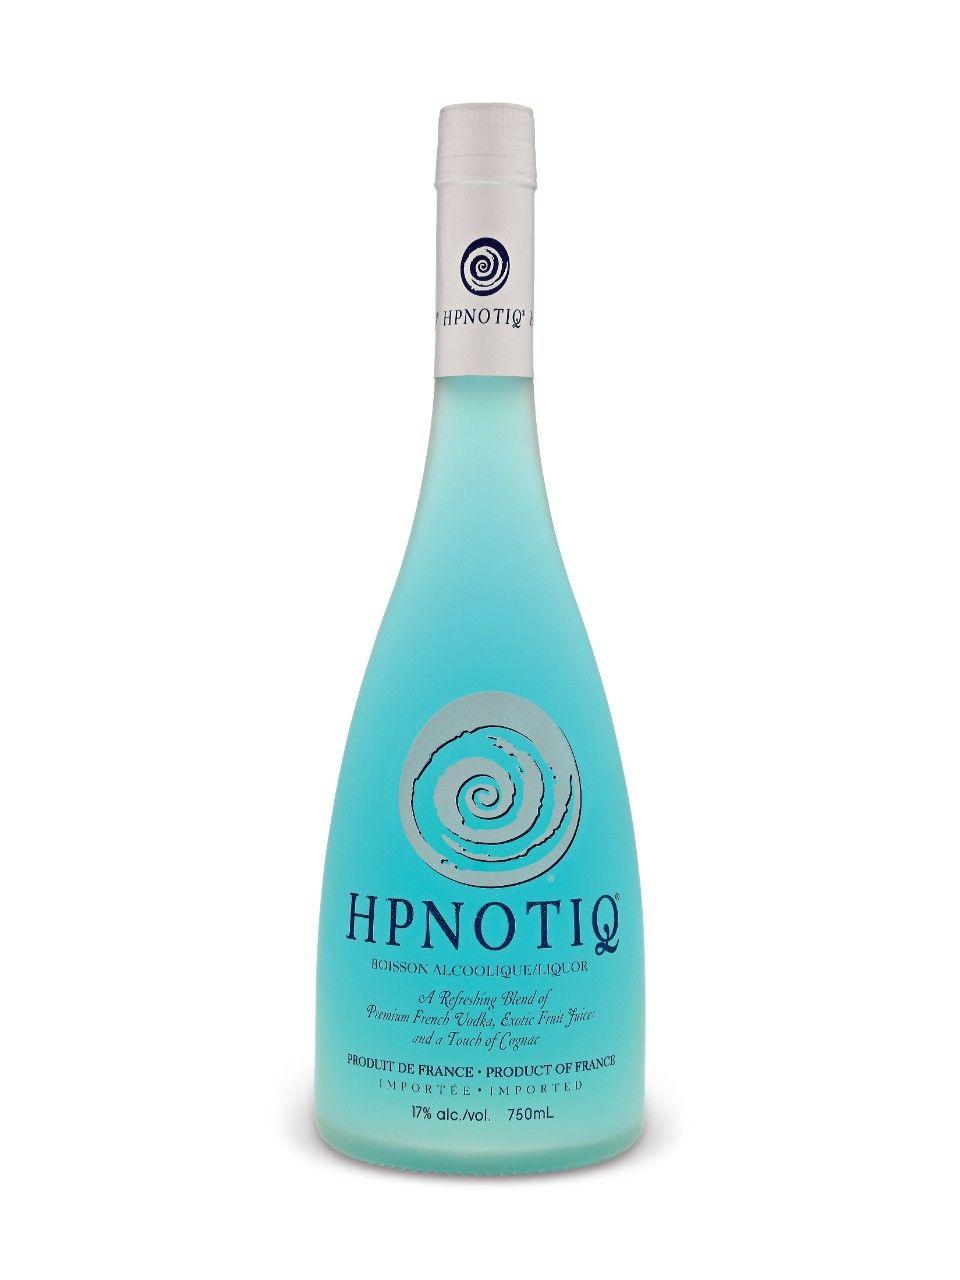 Hpnotiq Logo - Hpnotiq Liquor | LCBO